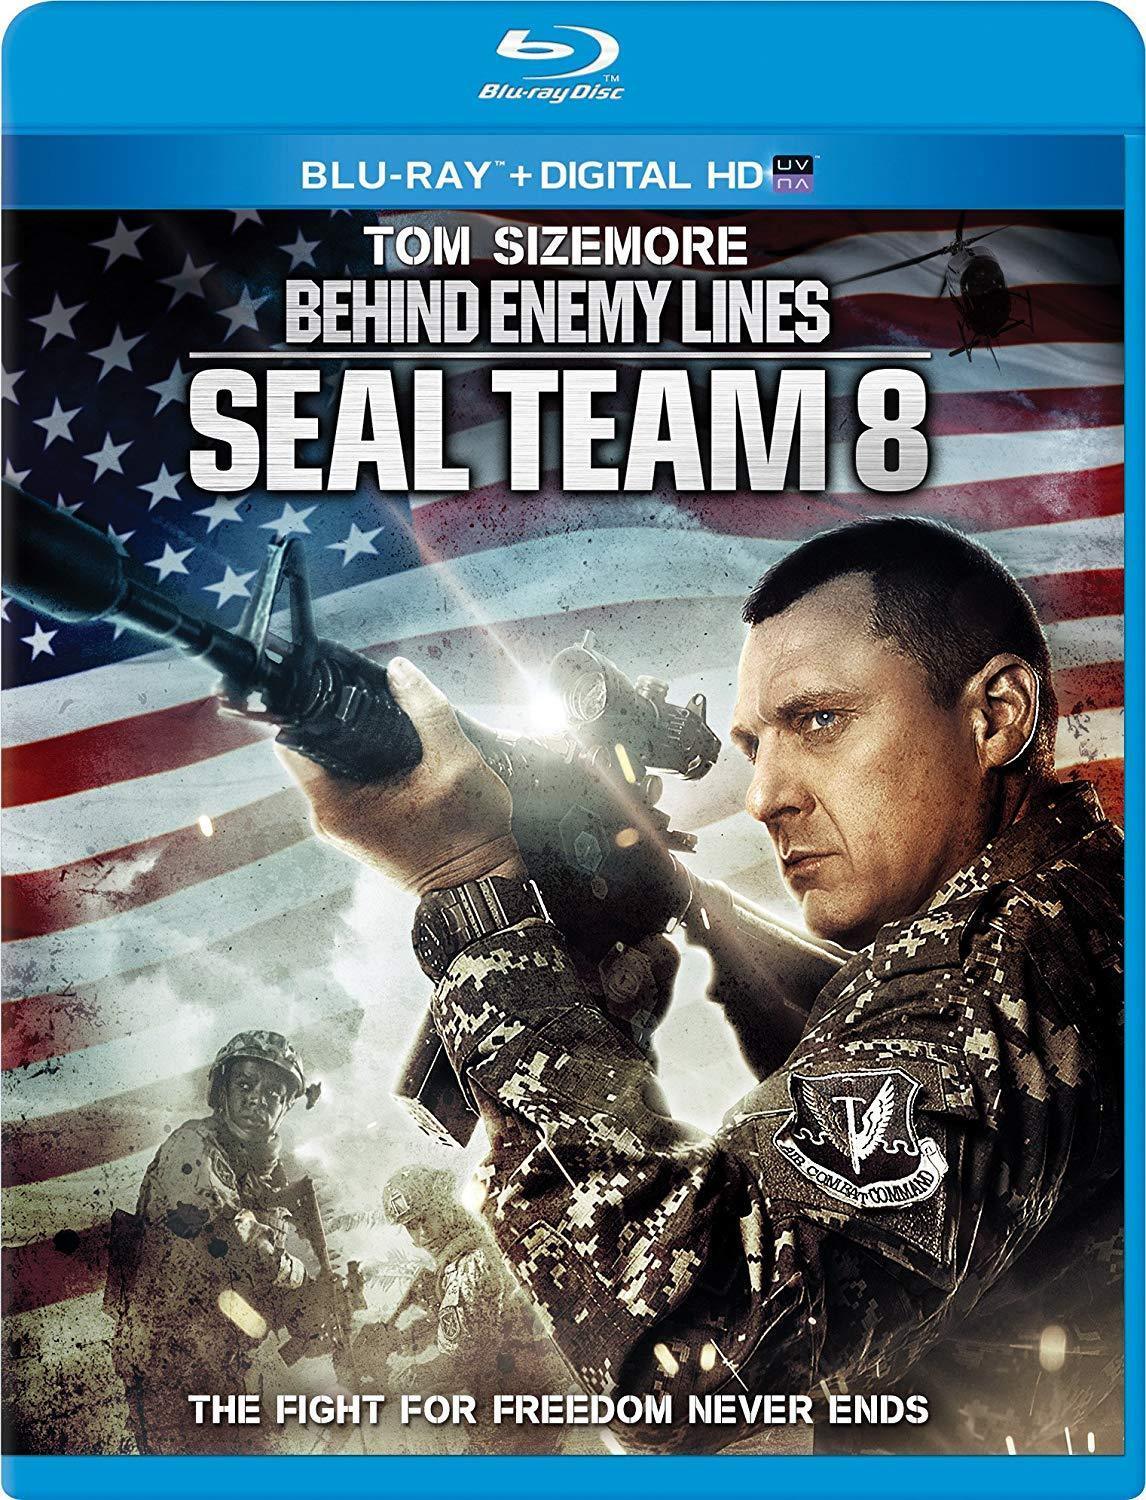 Seal Team 8: Behind Enemy Lines on Blu-Ray Blaze DVDs DVDs & Blu-ray Discs > Blu-ray Discs